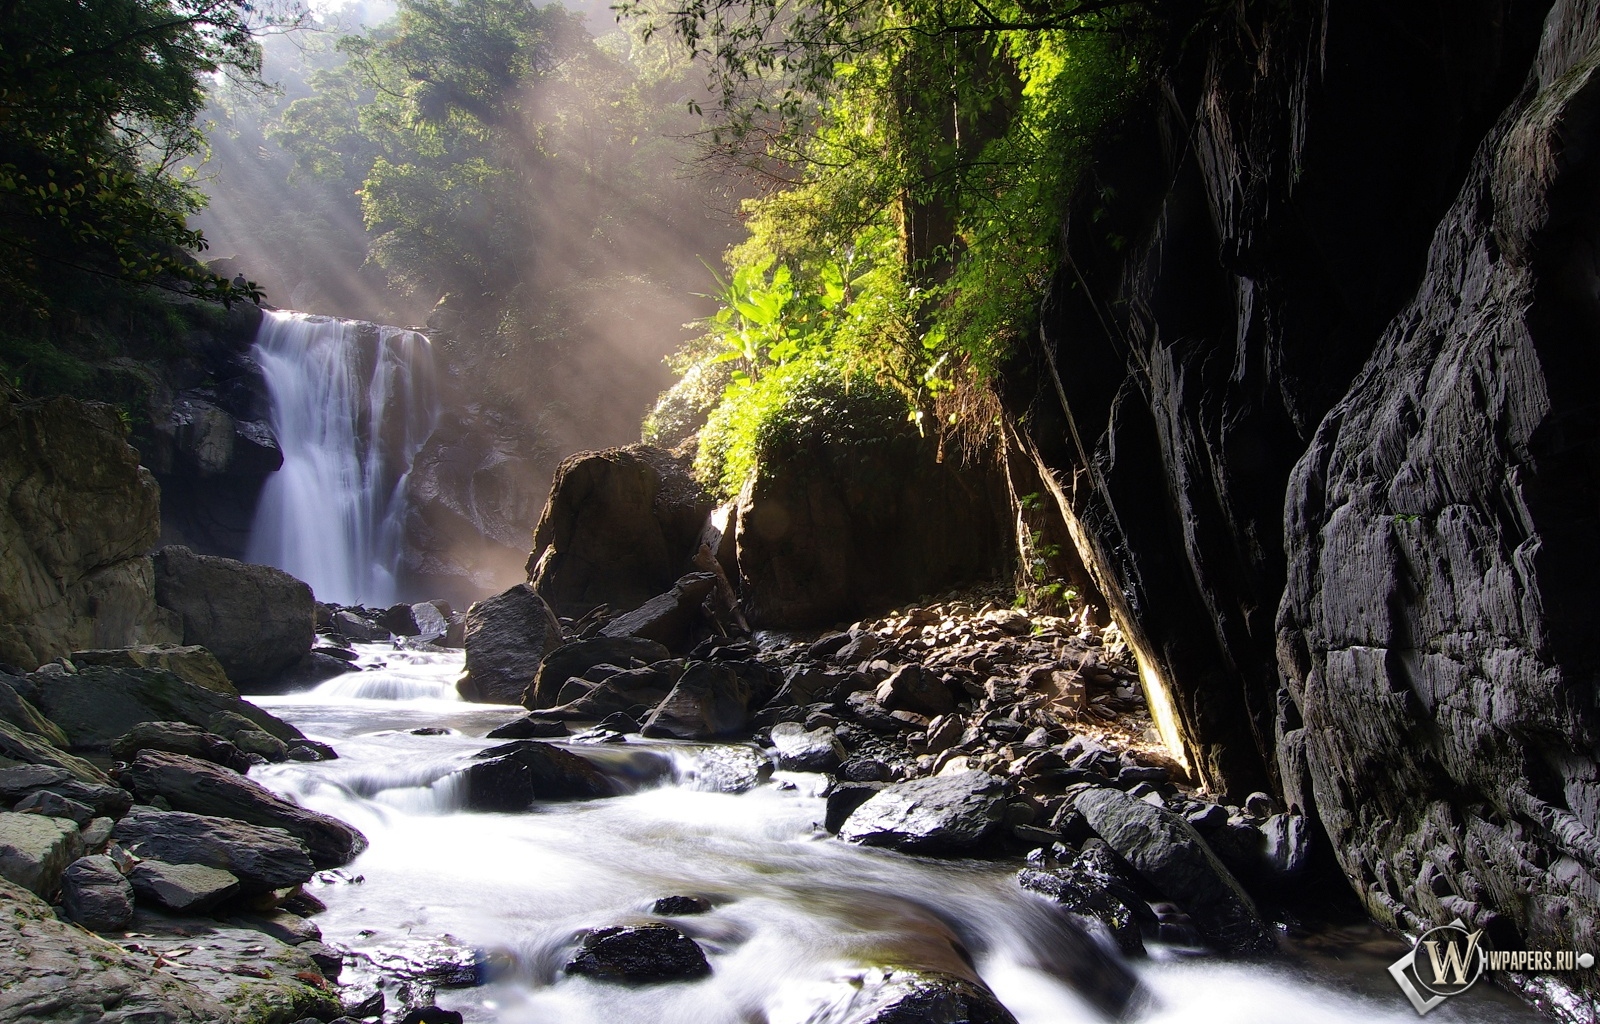 Neidong waterfall 1600x1024